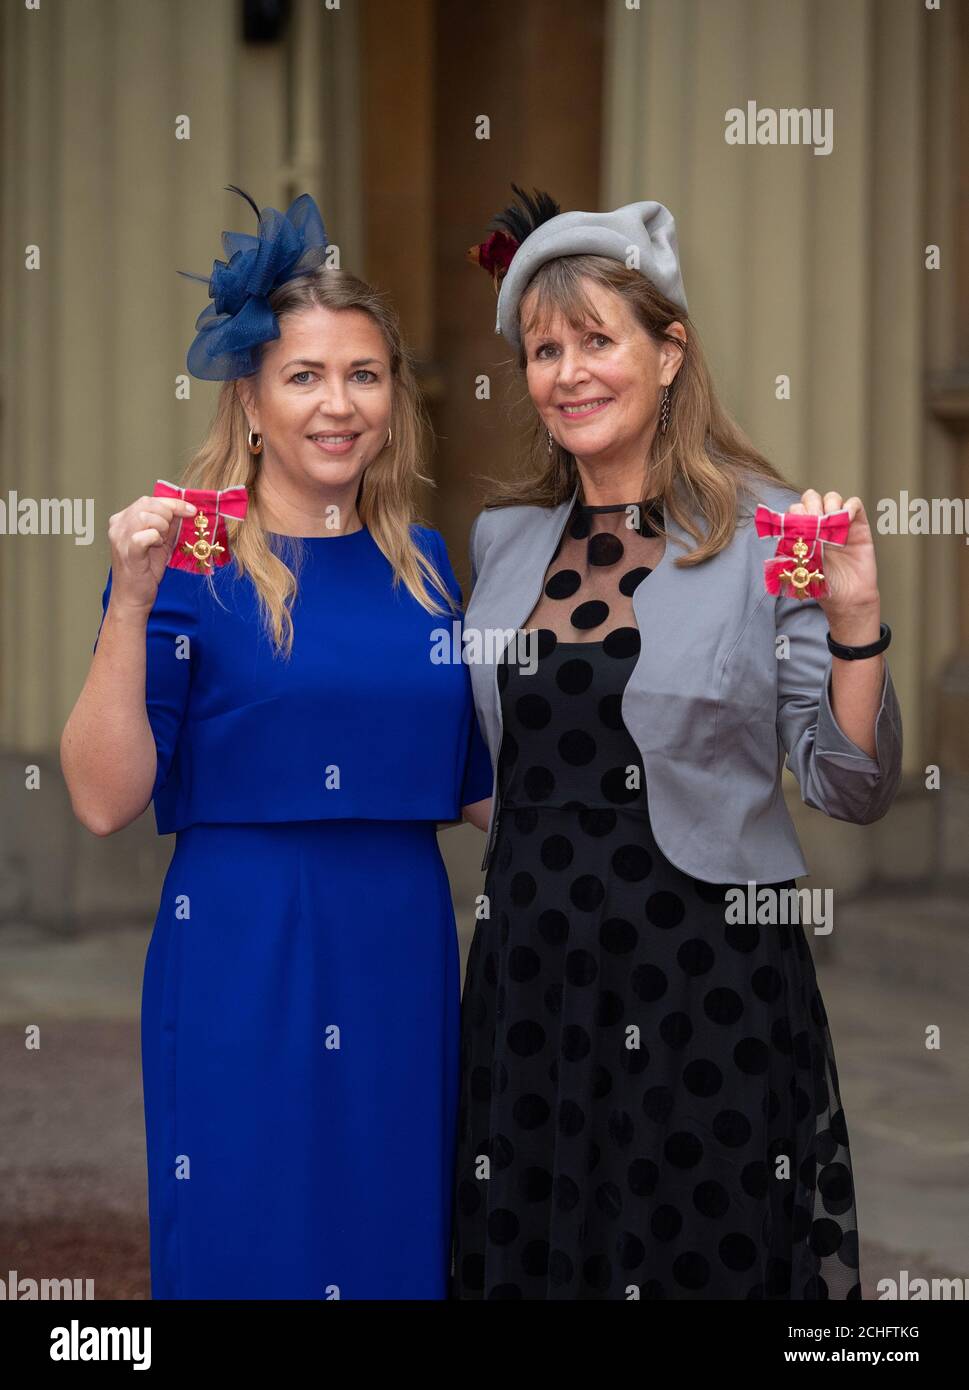 Amanda McLoughlin (à gauche) et sa mère Deborah Lye avec leurs médailles OBE, à la suite d'une cérémonie d'investiture à Buckingham Palace, Londres. Photo PA. Date de la photo: Jeudi 21 novembre 2019. Voir l'histoire de PA LES investitures ROYALES. Le crédit photo devrait se lire comme suit : Dominic Lipinski/PA Wire Banque D'Images